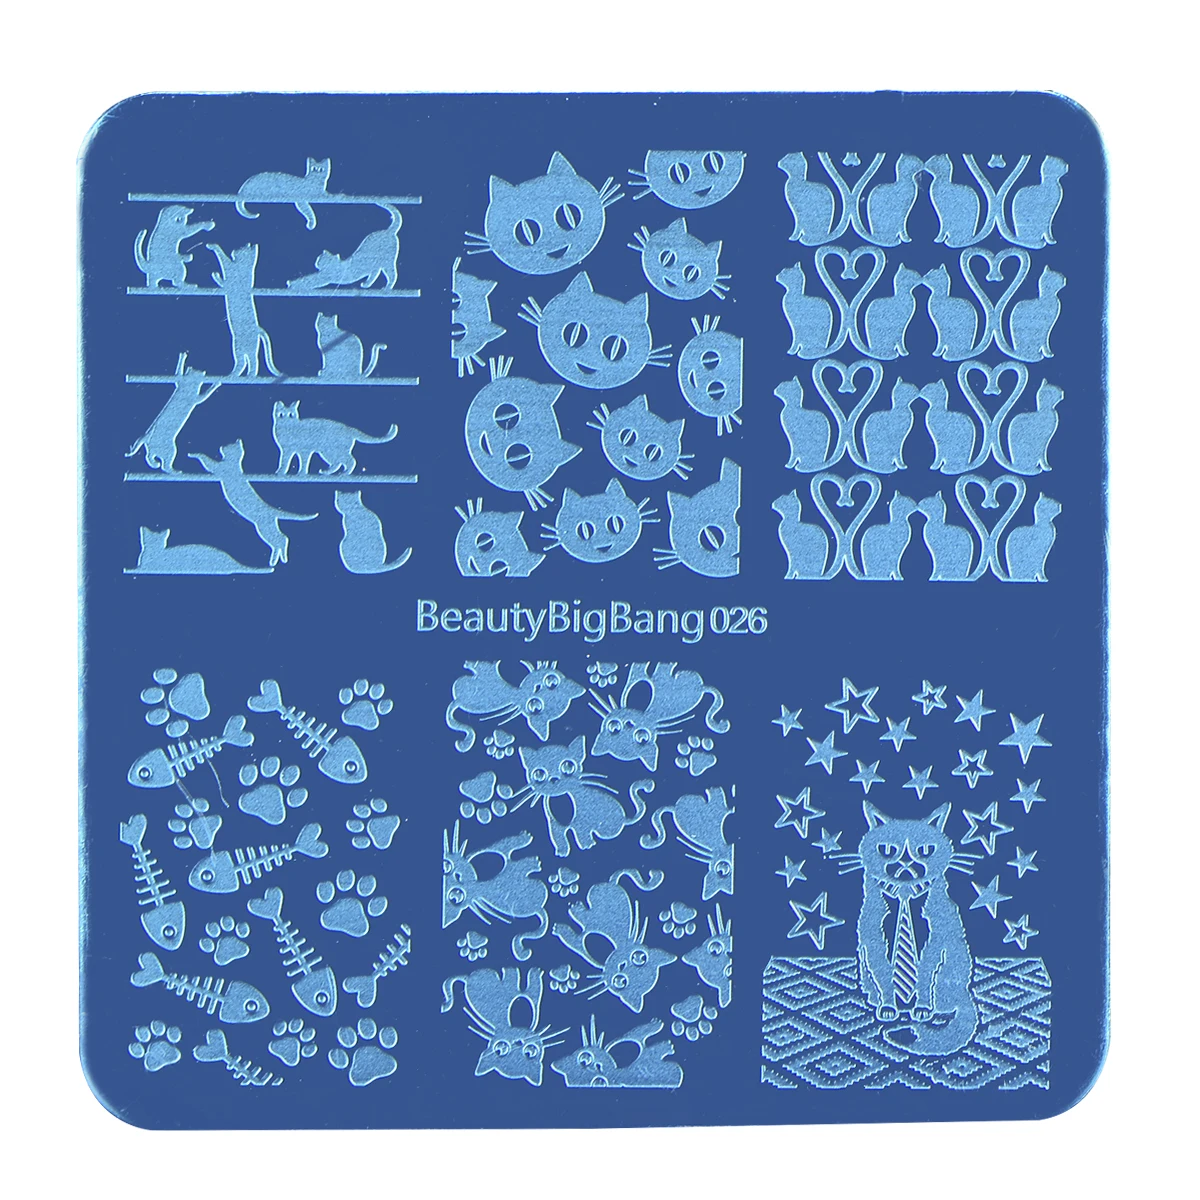 1 шт. BeautyBigBang 6*6 см квадратные пластины для штамповки ногтей летние мороженое шаблон для стемпинга для нейл-арта пластина изображения XL-027